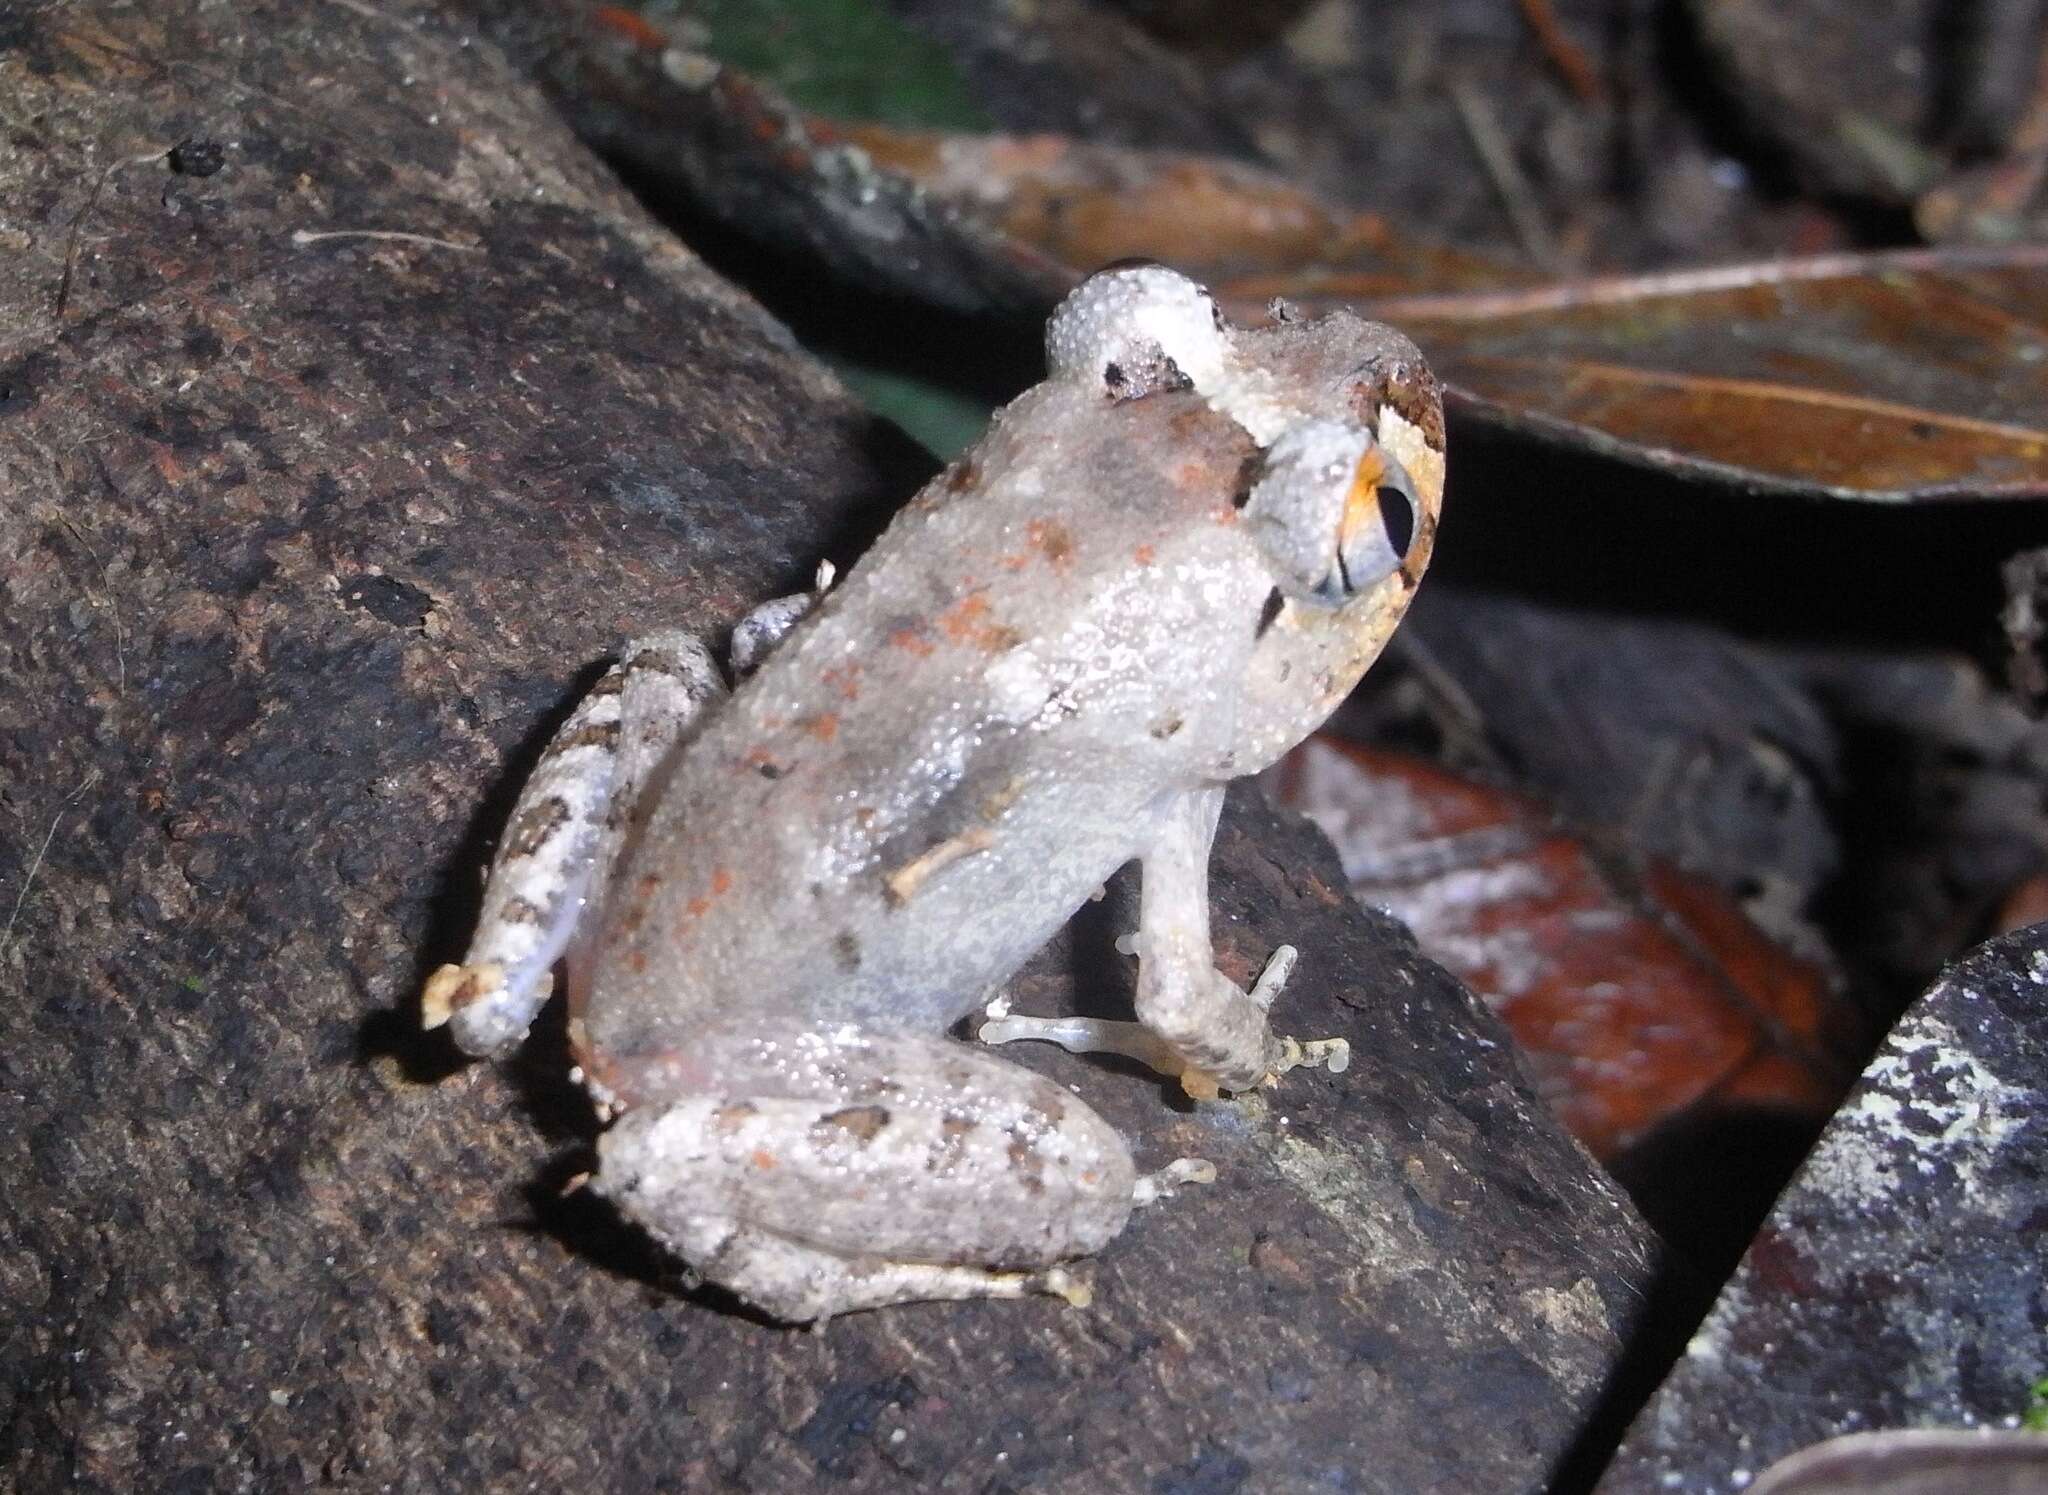 Image de Astylosternus laticephalus Rödel, Hillers, Leaché, Kouamé, Ofori-Boateng, Diaz & Sandberger 2012